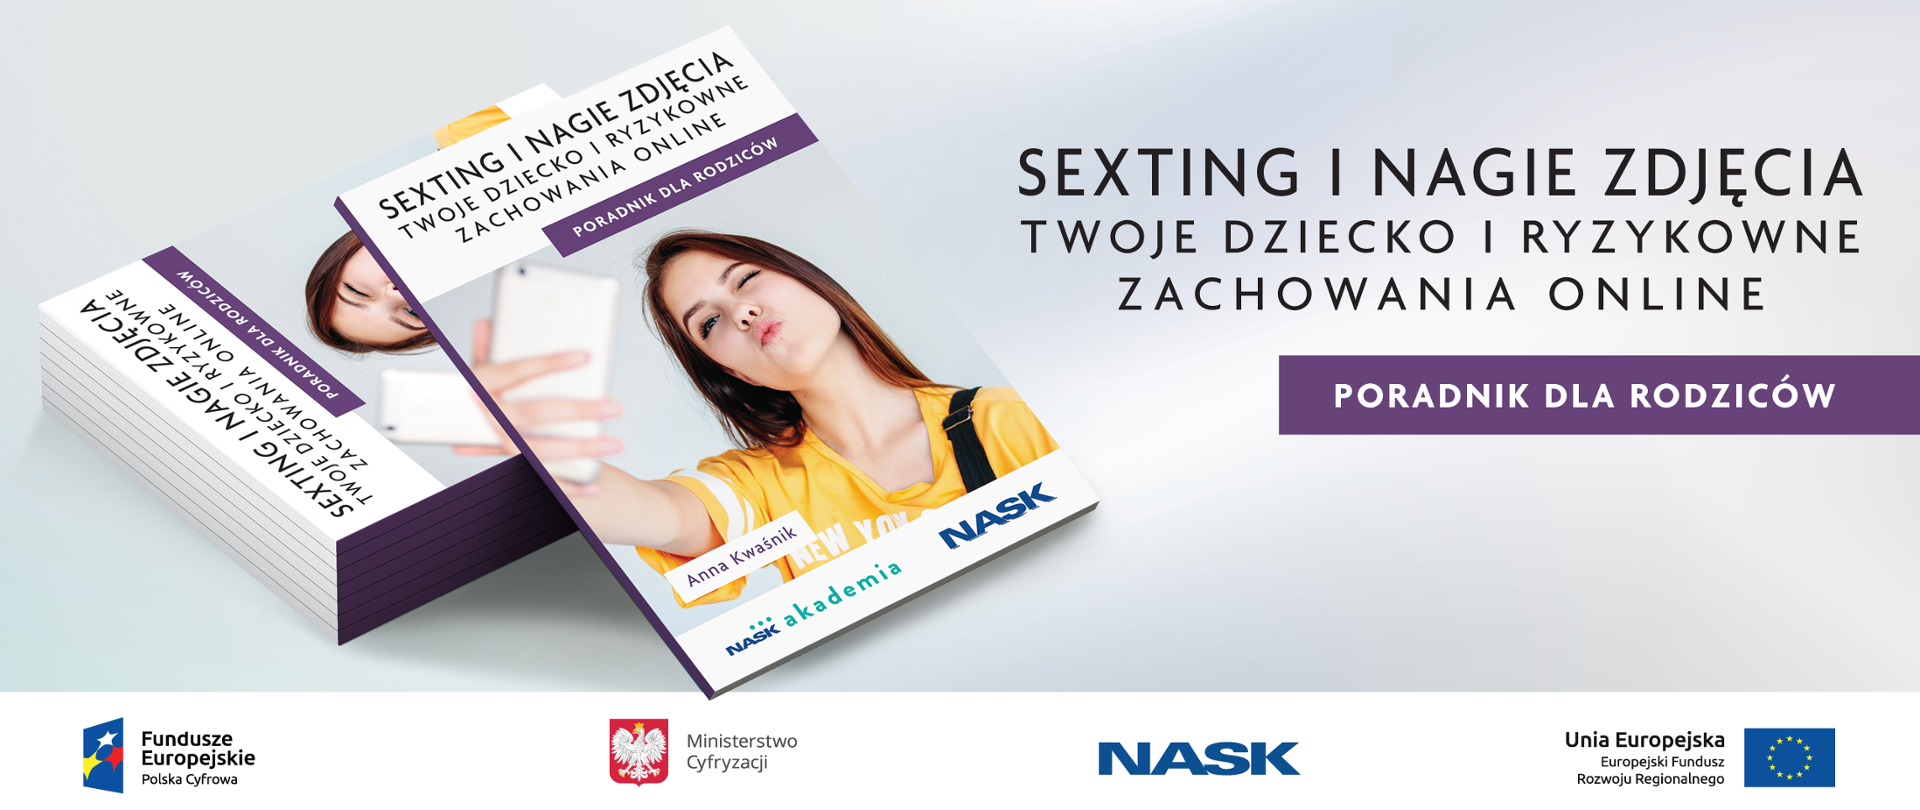 Sexting I Nagie Zdjęcia Twoje Dziecko I Negatywne Zachowania Online